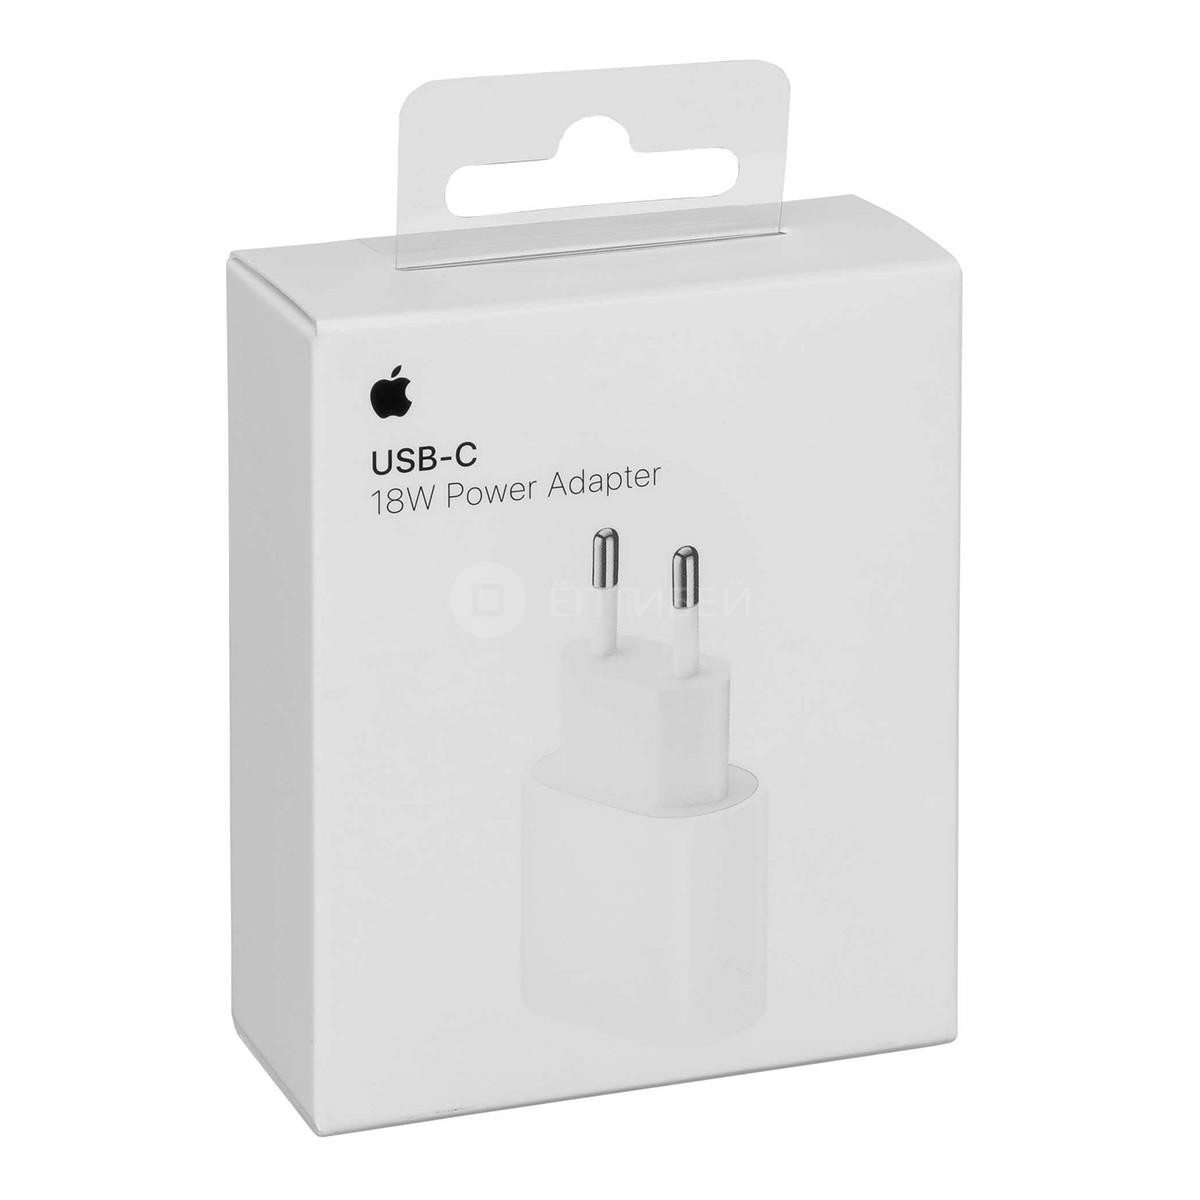 Блок питания для Apple iPhone с разъёмом USB-C, 18 Вт (оригинал, без упаковки)